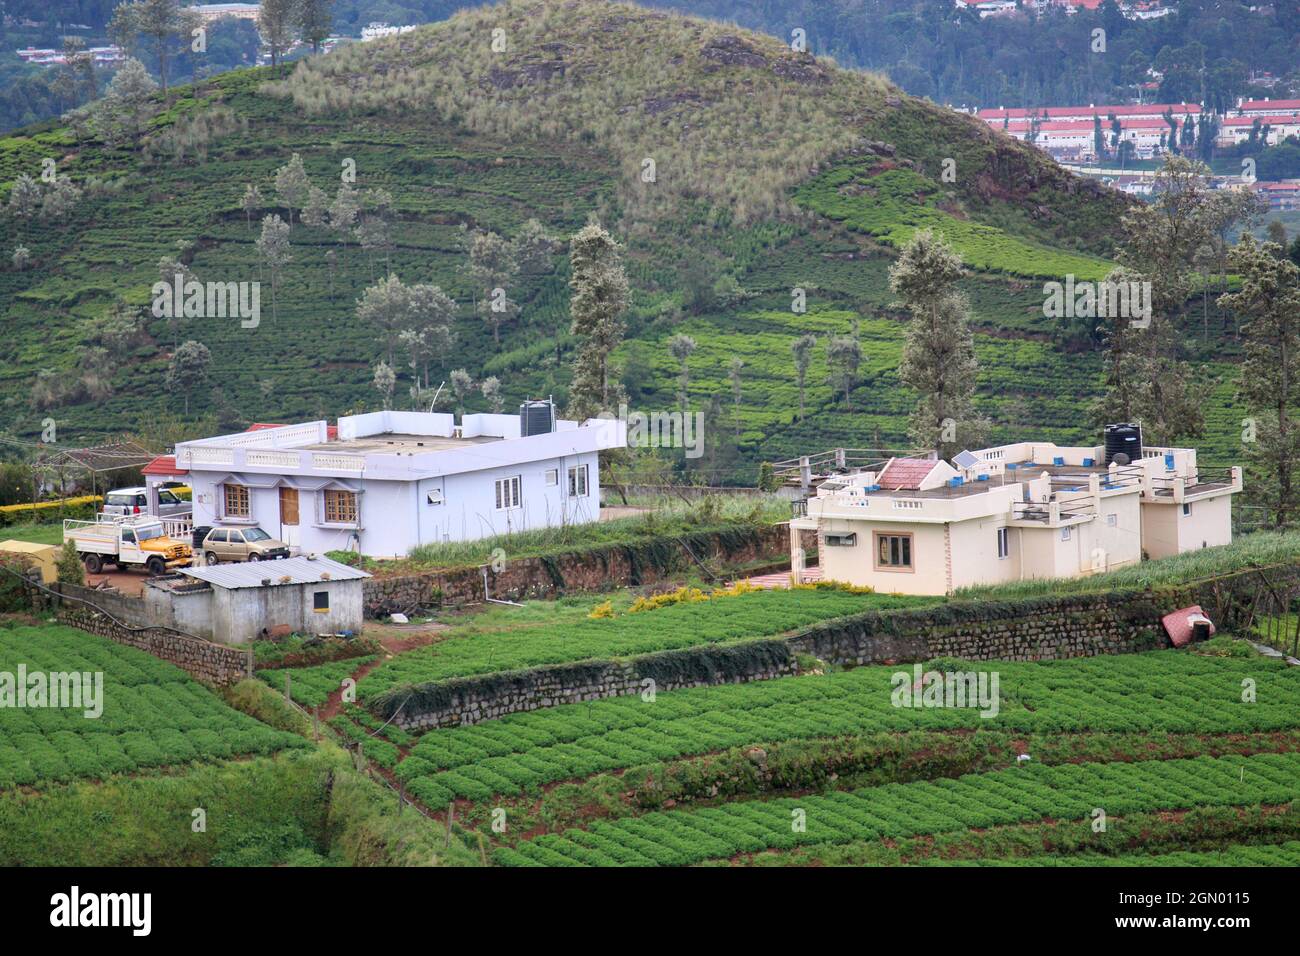 Maisons d'hôtes au sommet d'une colline, collines de Nilgiri, Tamilnadu, Inde Banque D'Images